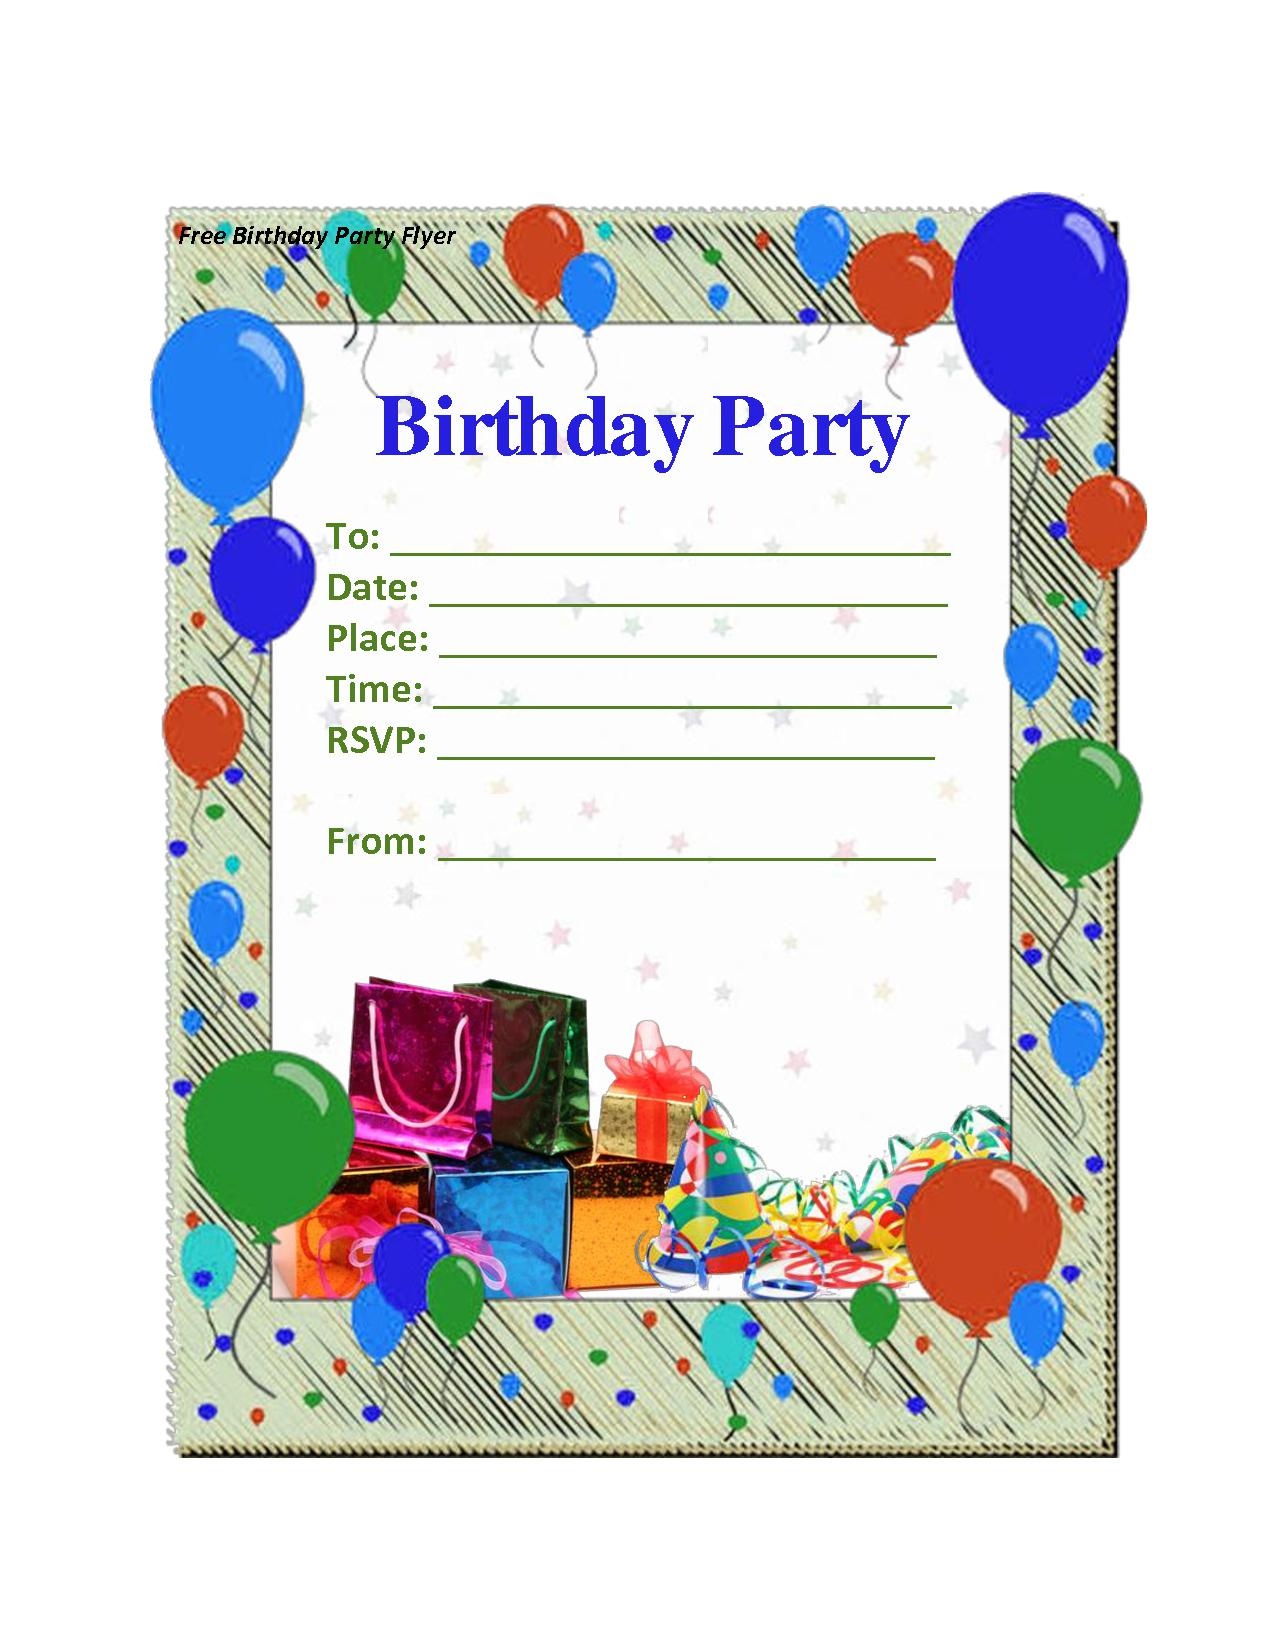 Birthday Party Invitation Maker Free — Birthday Invitation Examples - Make Printable Party Invitations Online Free